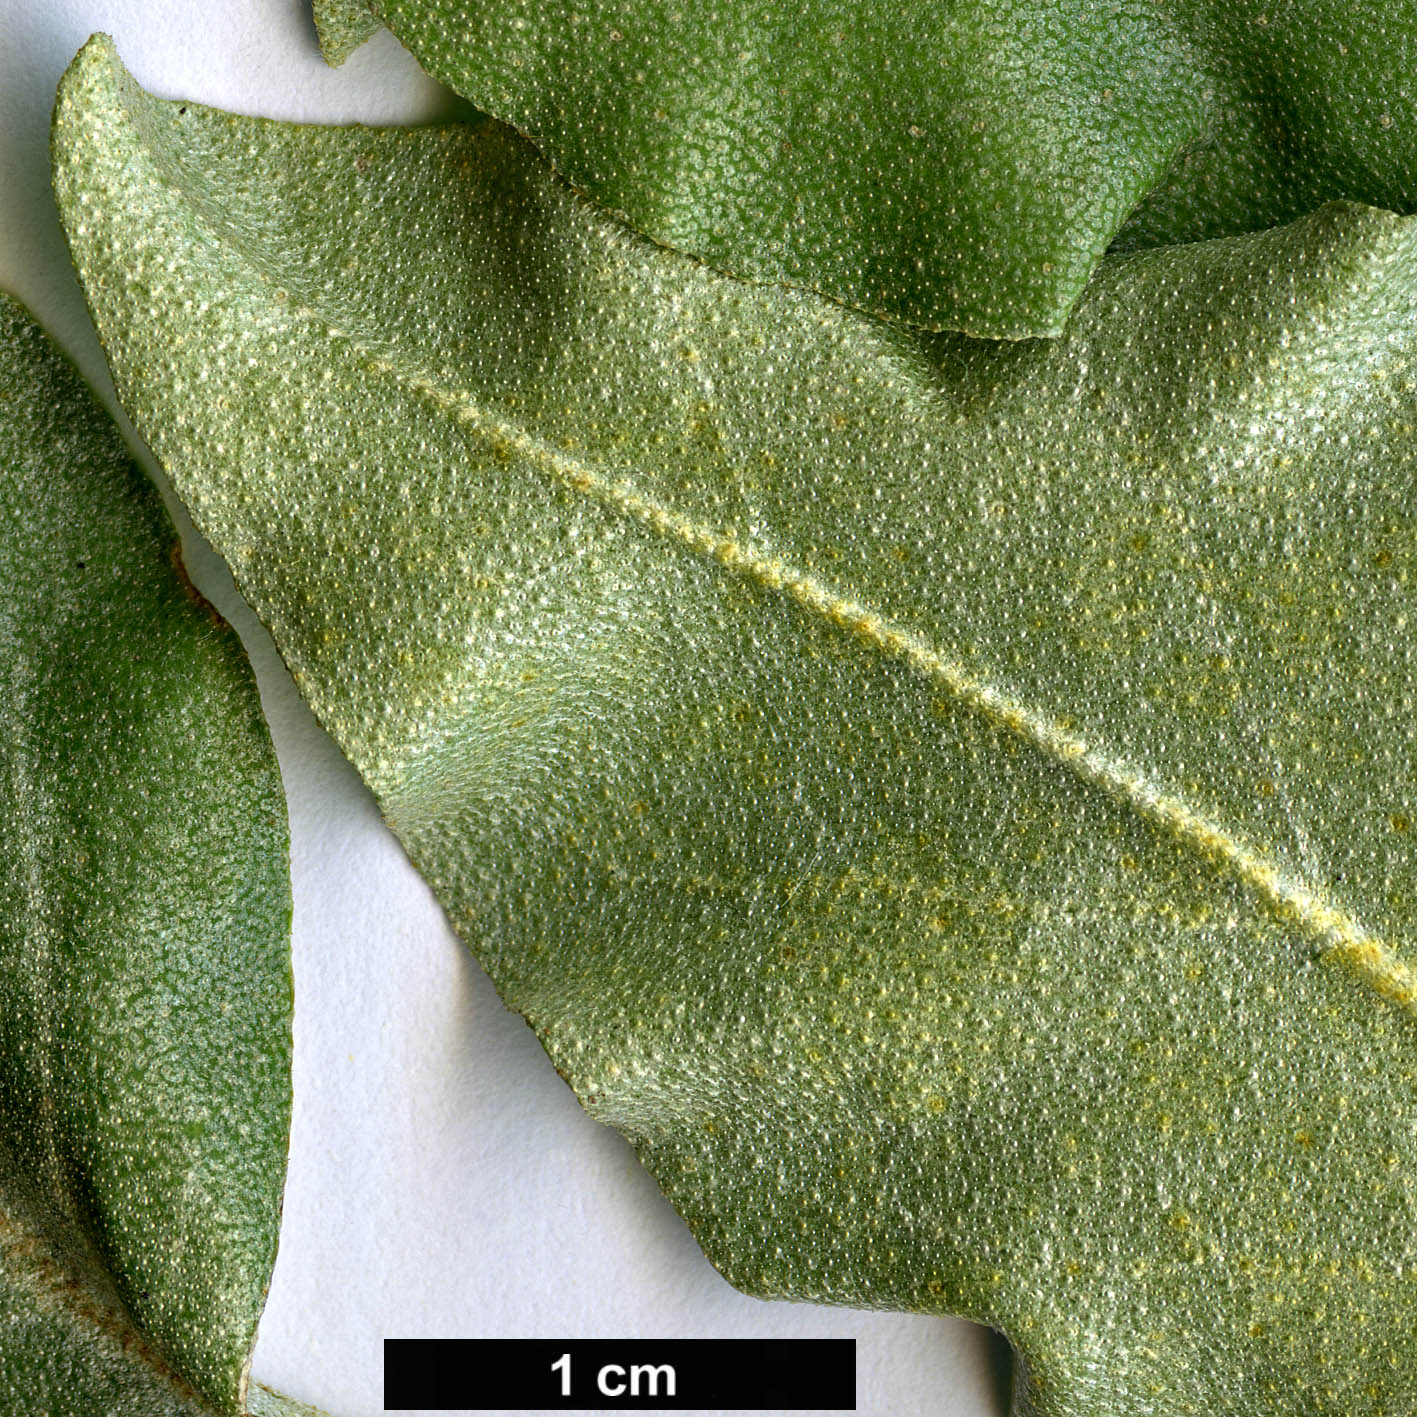 High resolution image: Family: Elaeagnaceae - Genus: Elaeagnus - Taxon: commutata